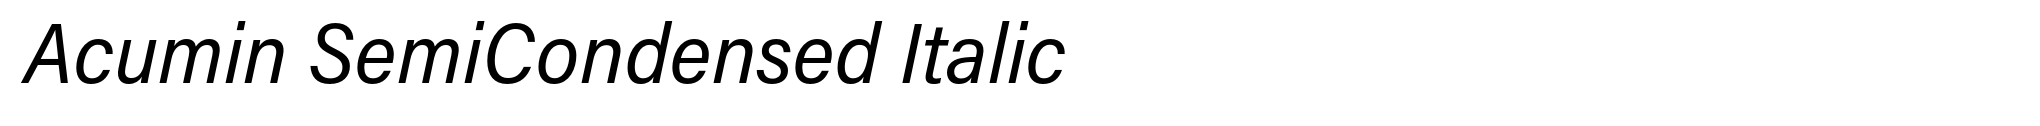 Acumin SemiCondensed Italic image